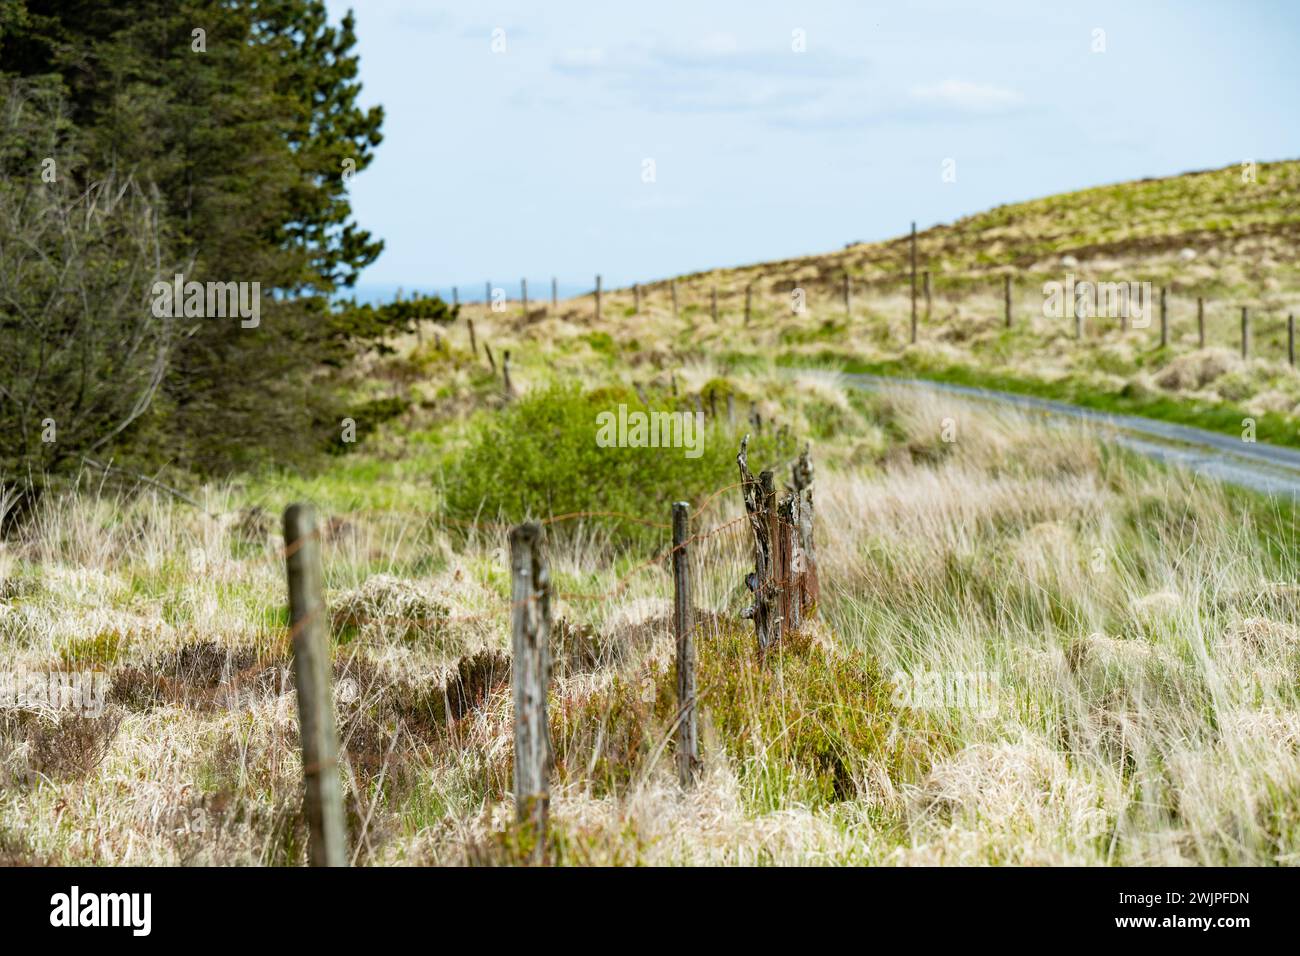 Pascoli e terreni agricoli tipici dell'Irlanda. Splendida campagna irlandese con campi e prati verde smeraldo. Paesaggio rurale. Foto Stock